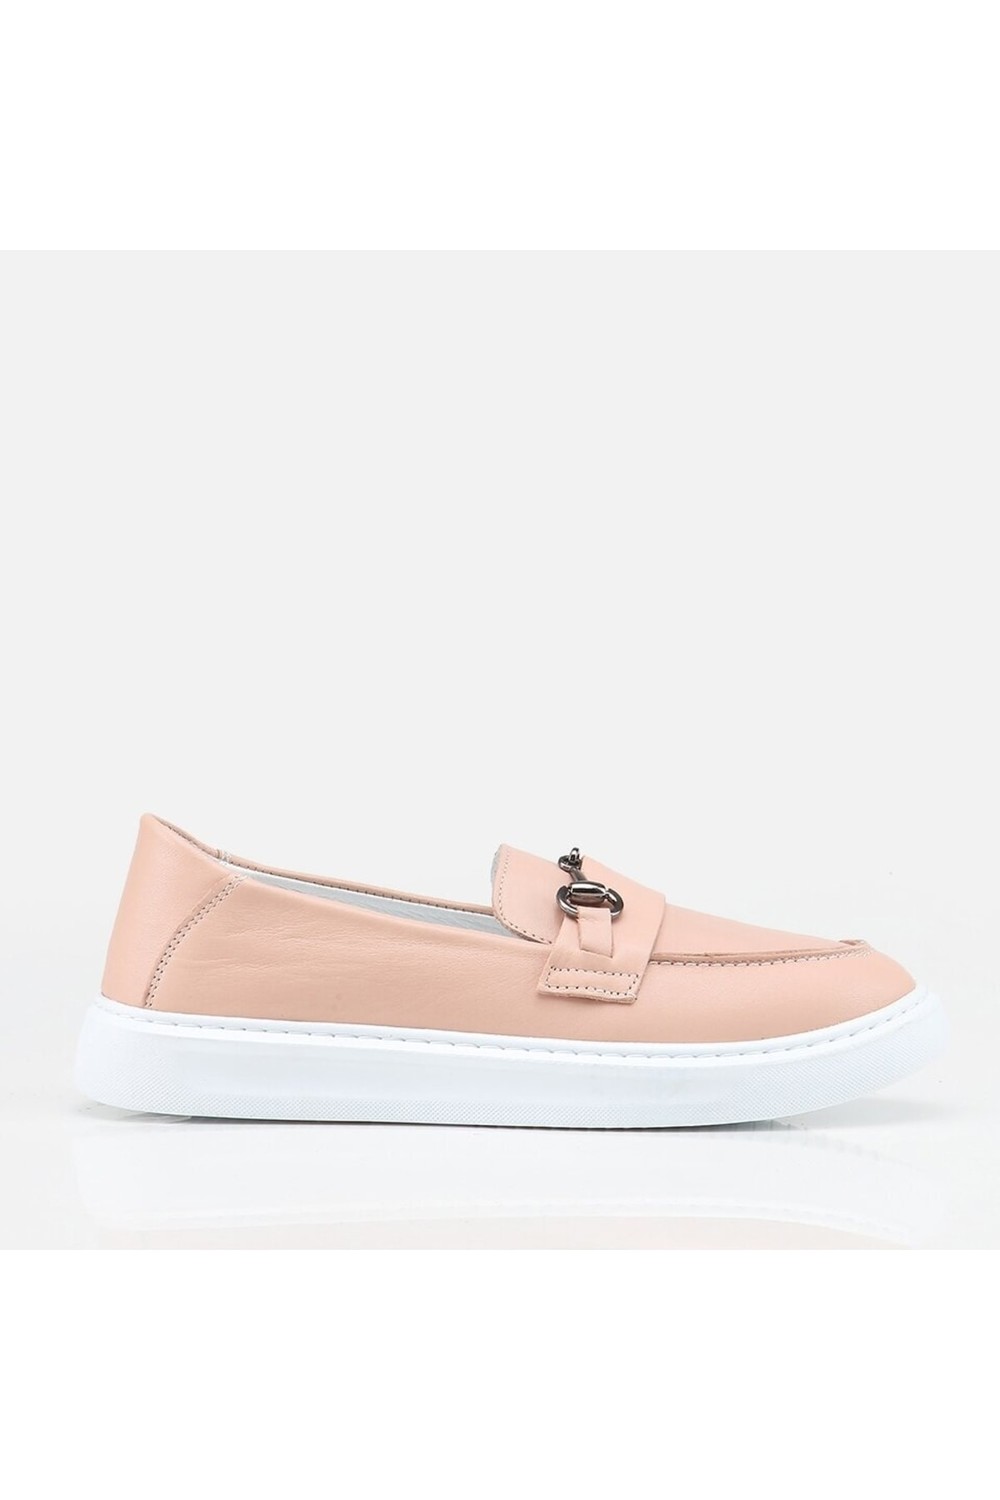 Hotiç Loafer Shoes - Pink - Flat